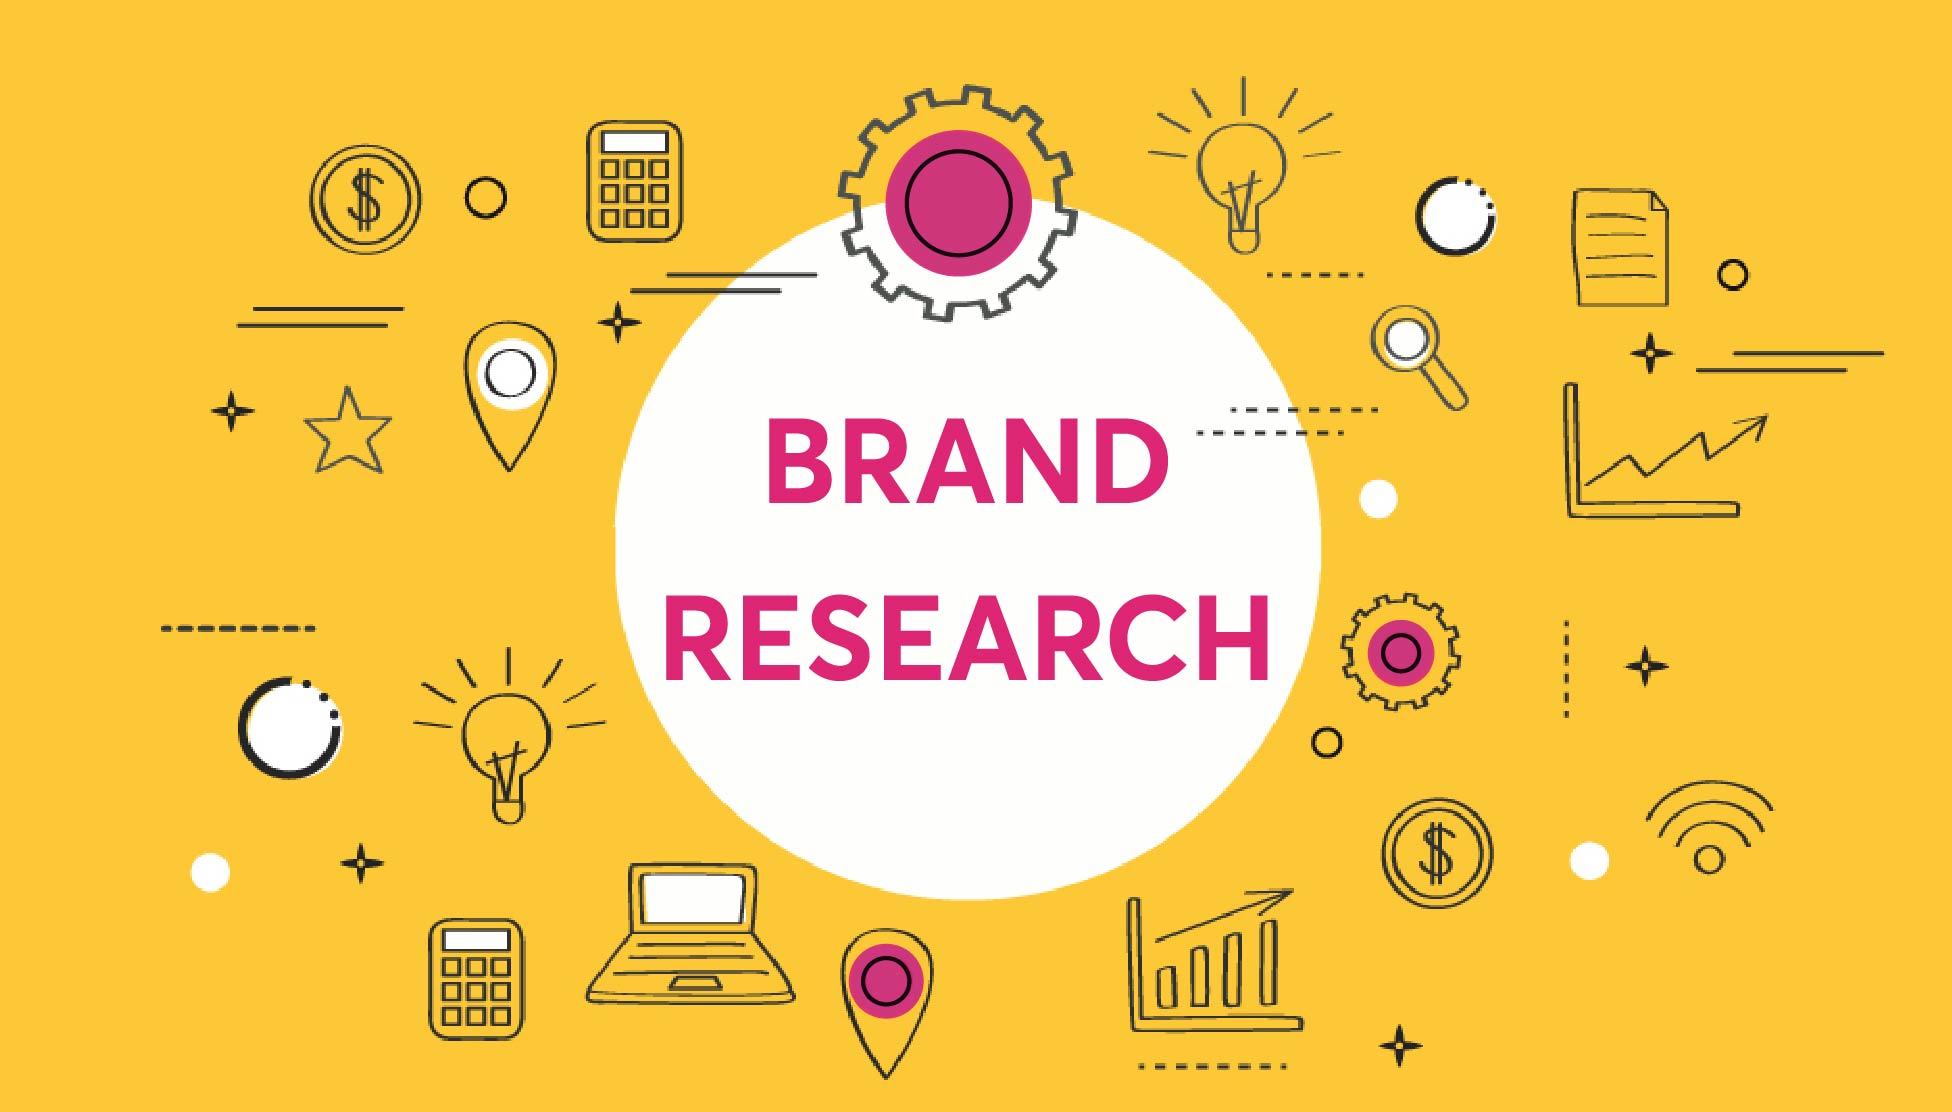 10 KPIs quan trọng trong Brand Research - Nghiên cứu thương hiệu dựa trên Data | Tomorrow Marketers